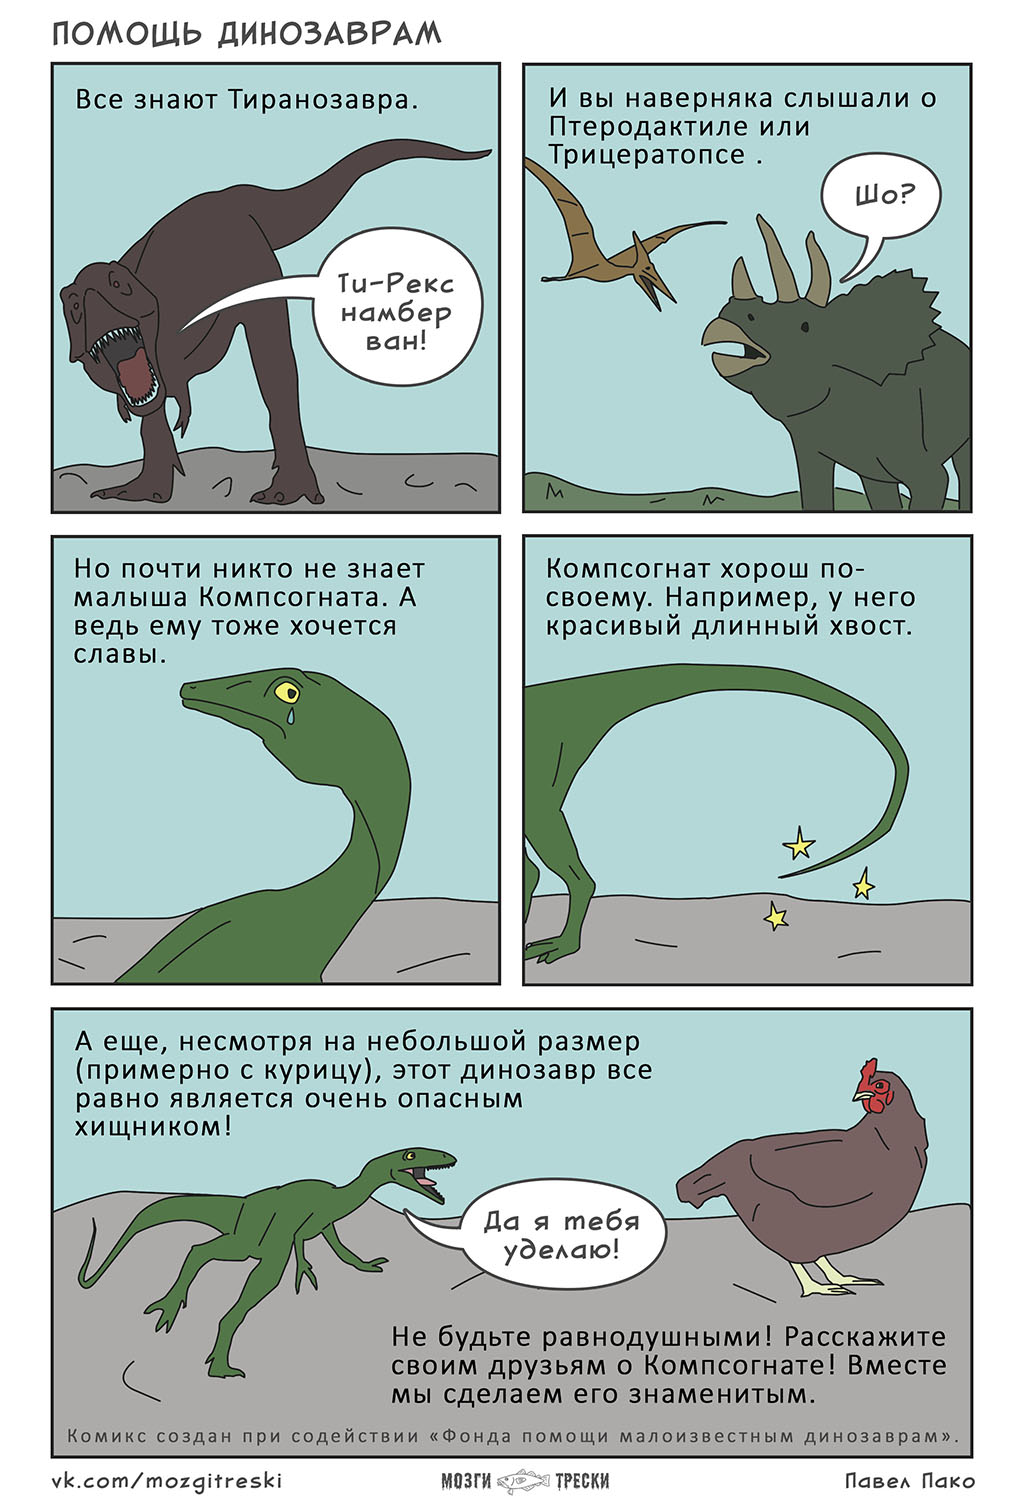 Помощь динозаврам